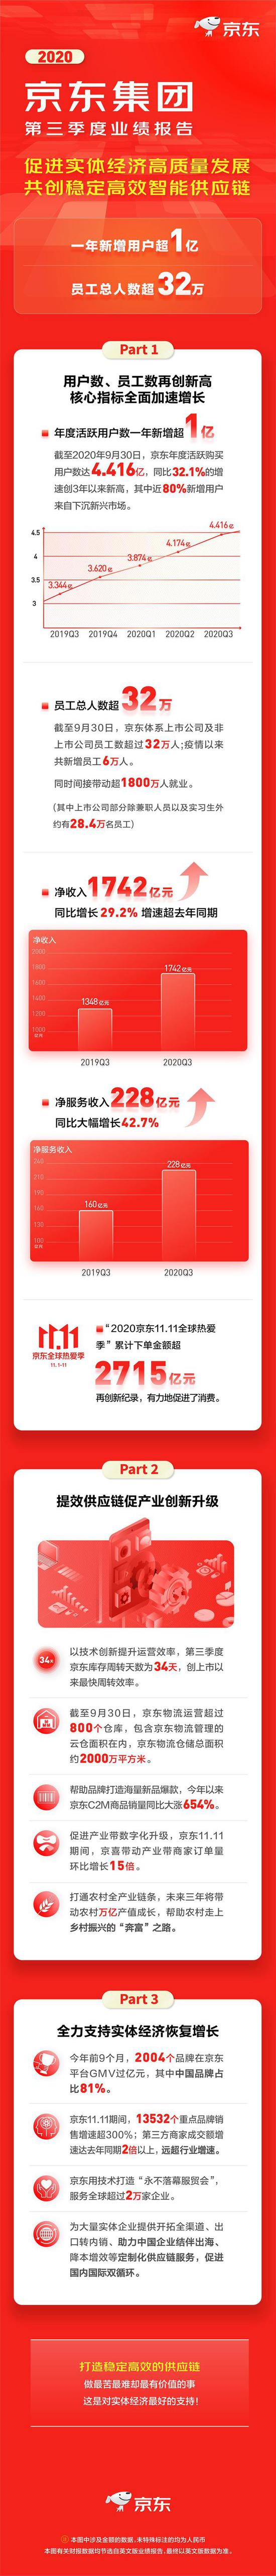 京东第三季度净利润56亿元 同比增长80.1%